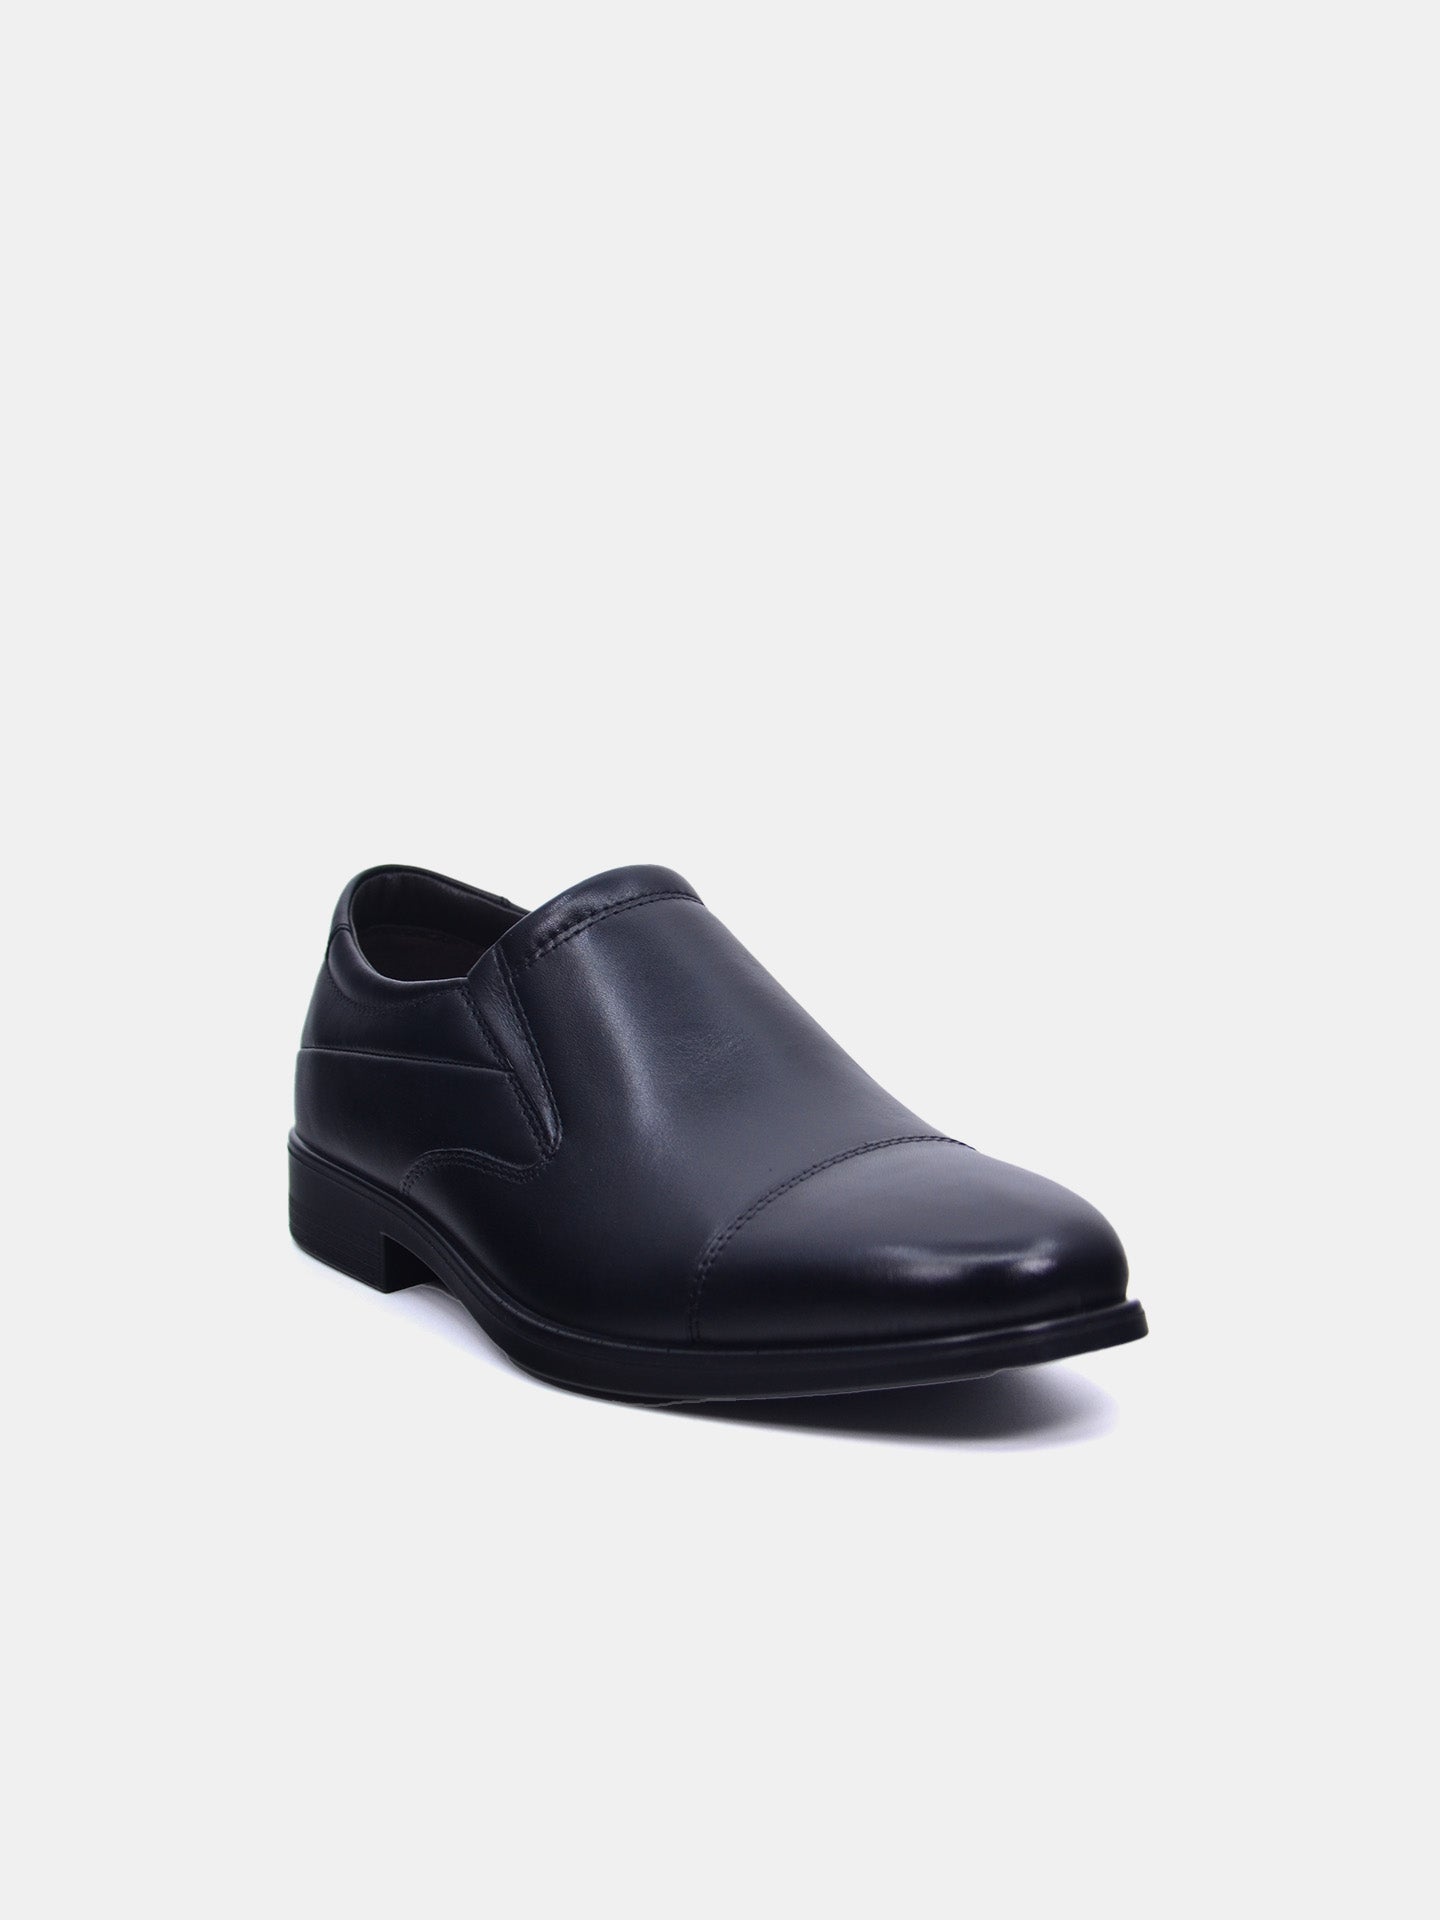 Josef Seibel M756-09 Men's Formal Shoes #color_Black